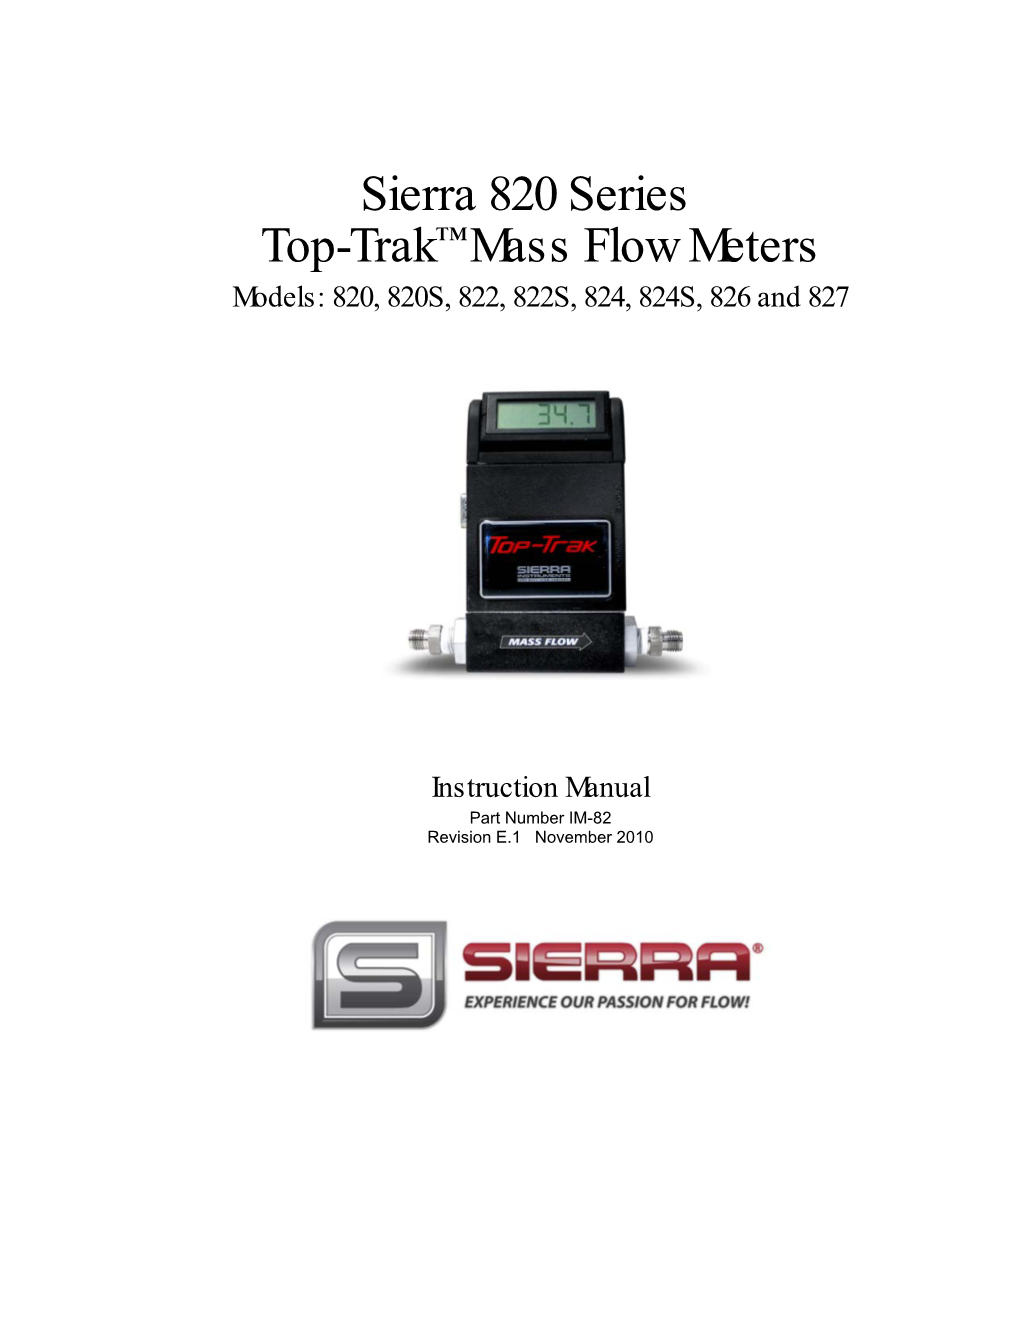 Sierra 820 Series Top-Trak™ Mass Flow Meters Models: 820, 820S, 822, 822S, 824, 824S, 826 and 827